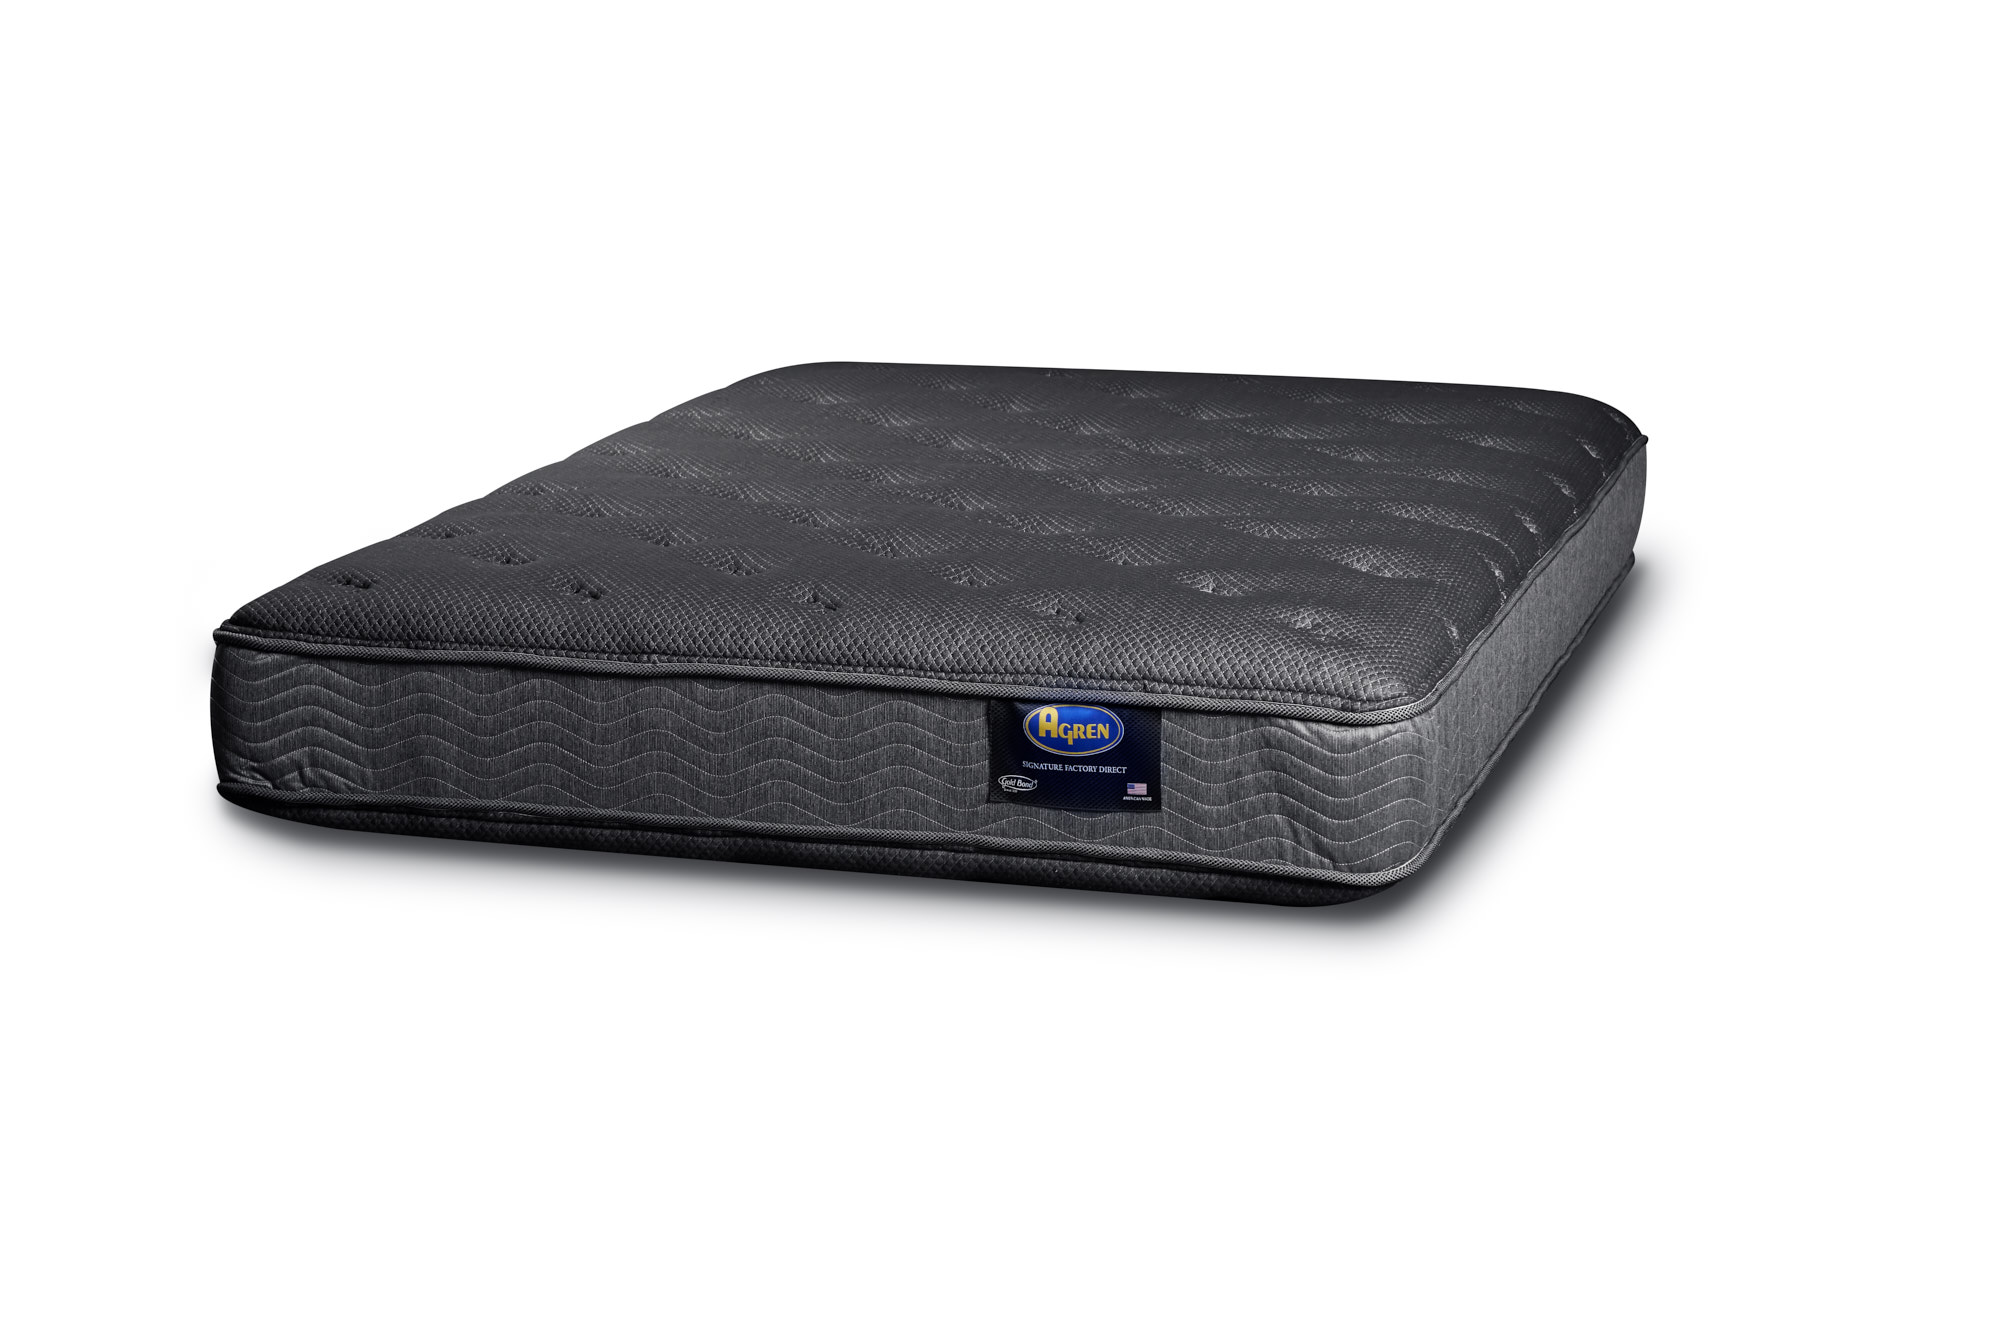 sensorgel 12 mattress review